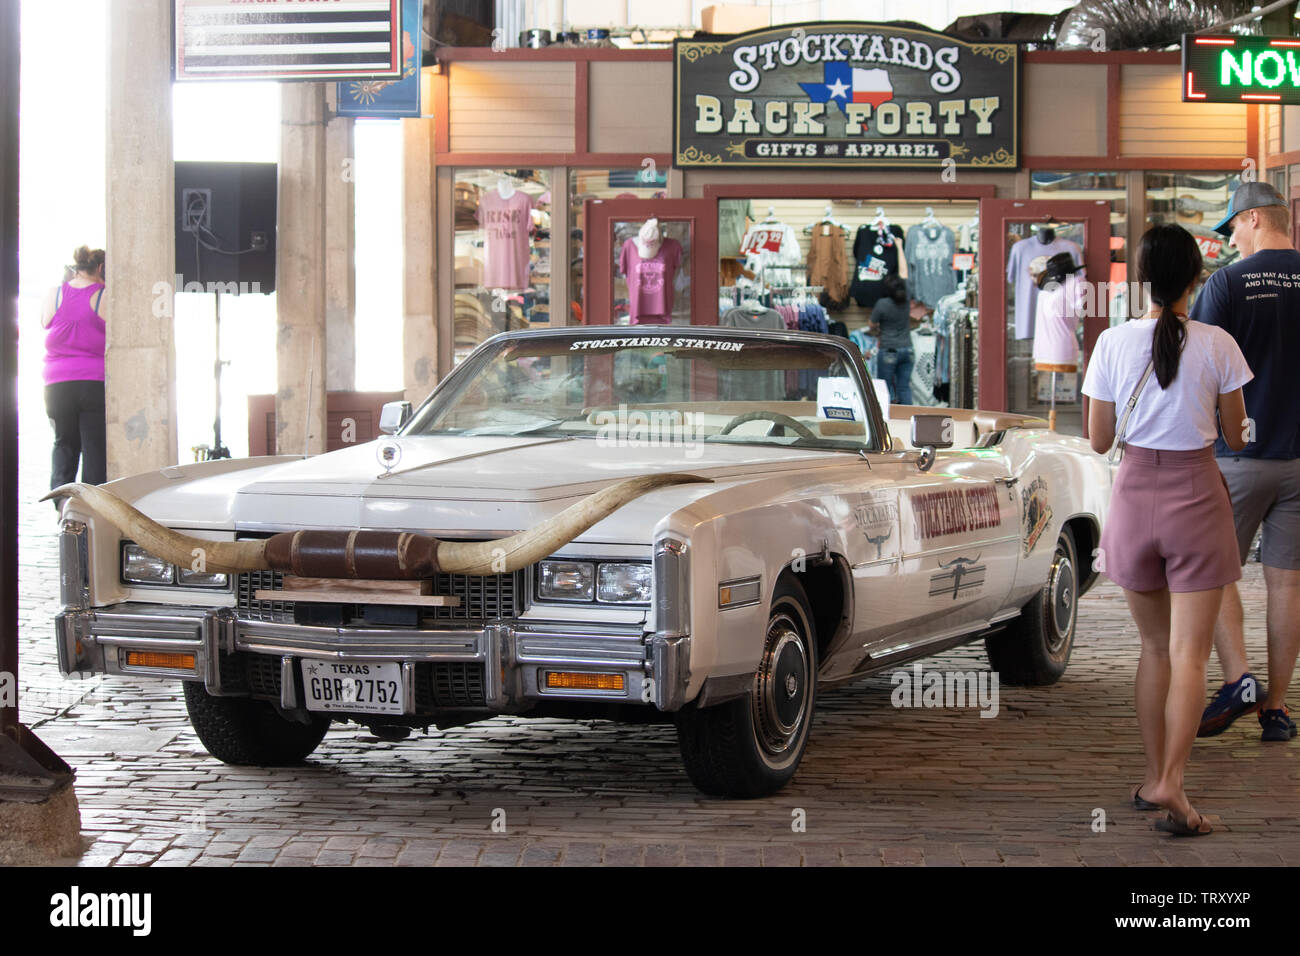 Ein klassisches amerikanisches Auto mit Hörnern am Frontgrill auf Anzeige an die Fort Worth Stockyards Historic District Stockfoto